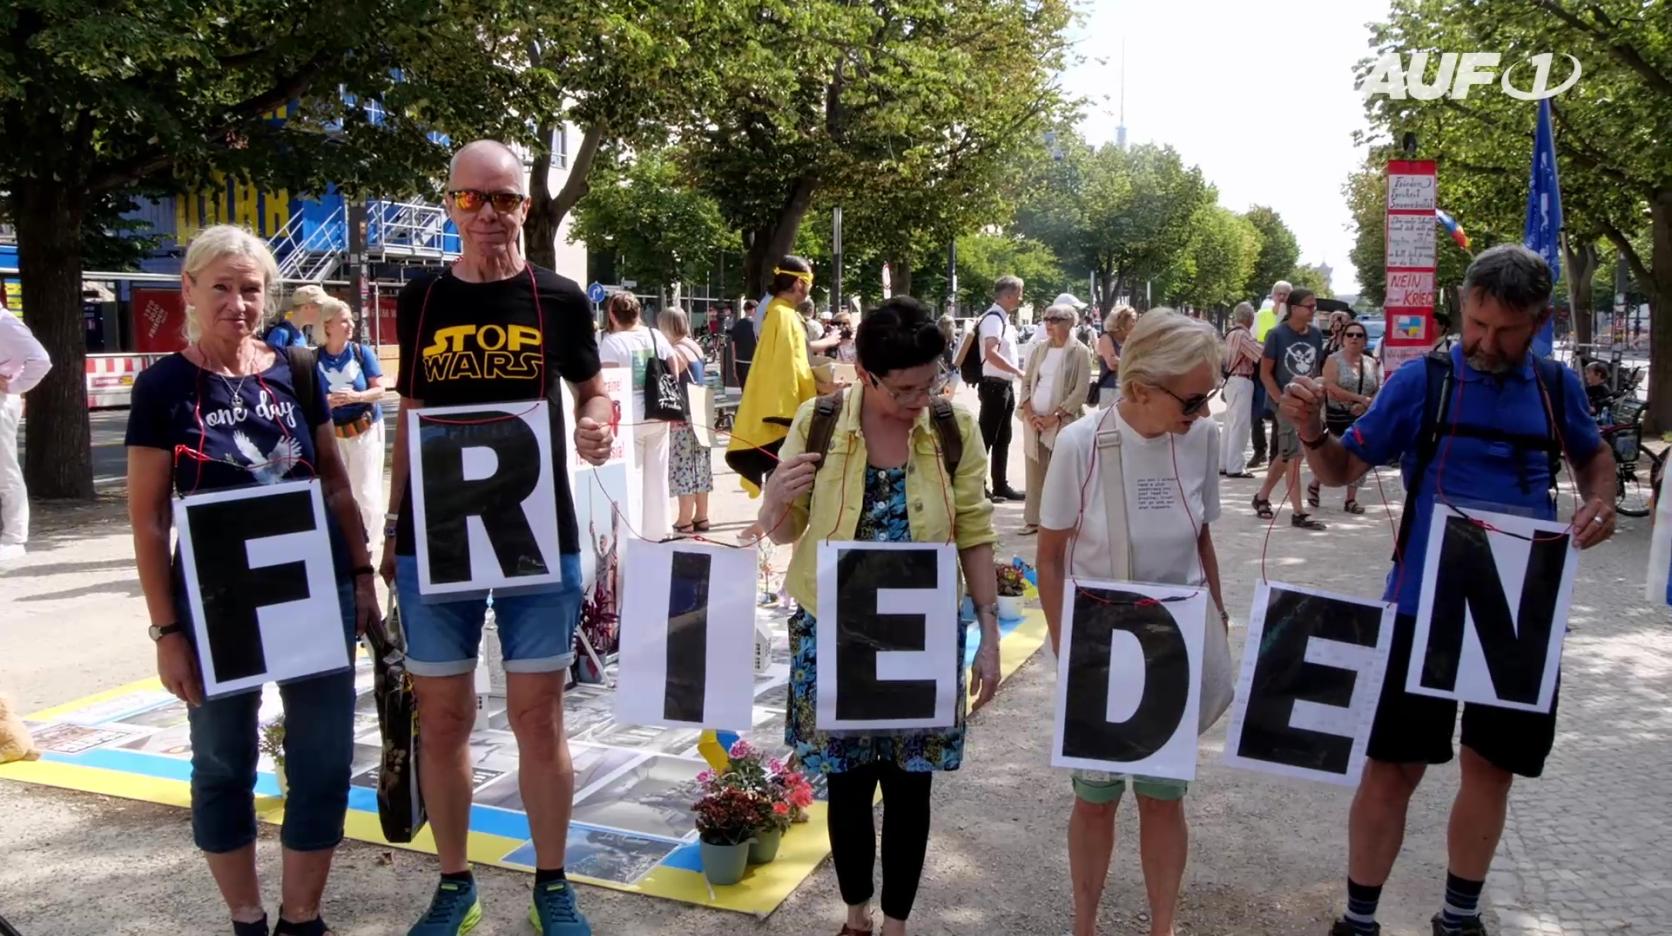 ⁣Menschenkette für den Frieden – Diese Berliner wollen verbinden statt spalten